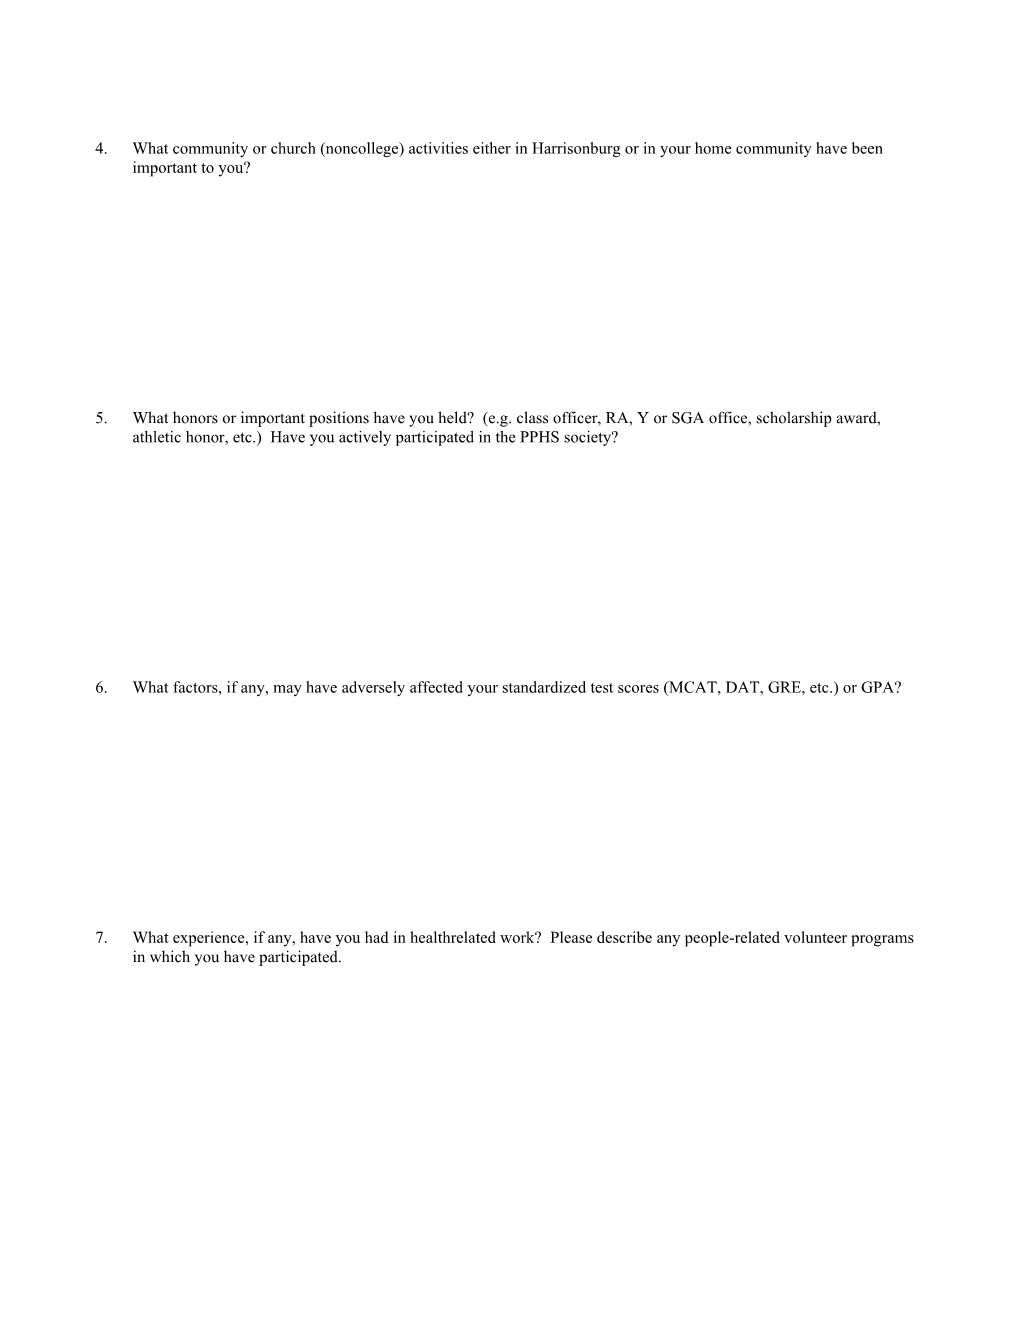 Pre-Professional Health Sciences Questionnaire